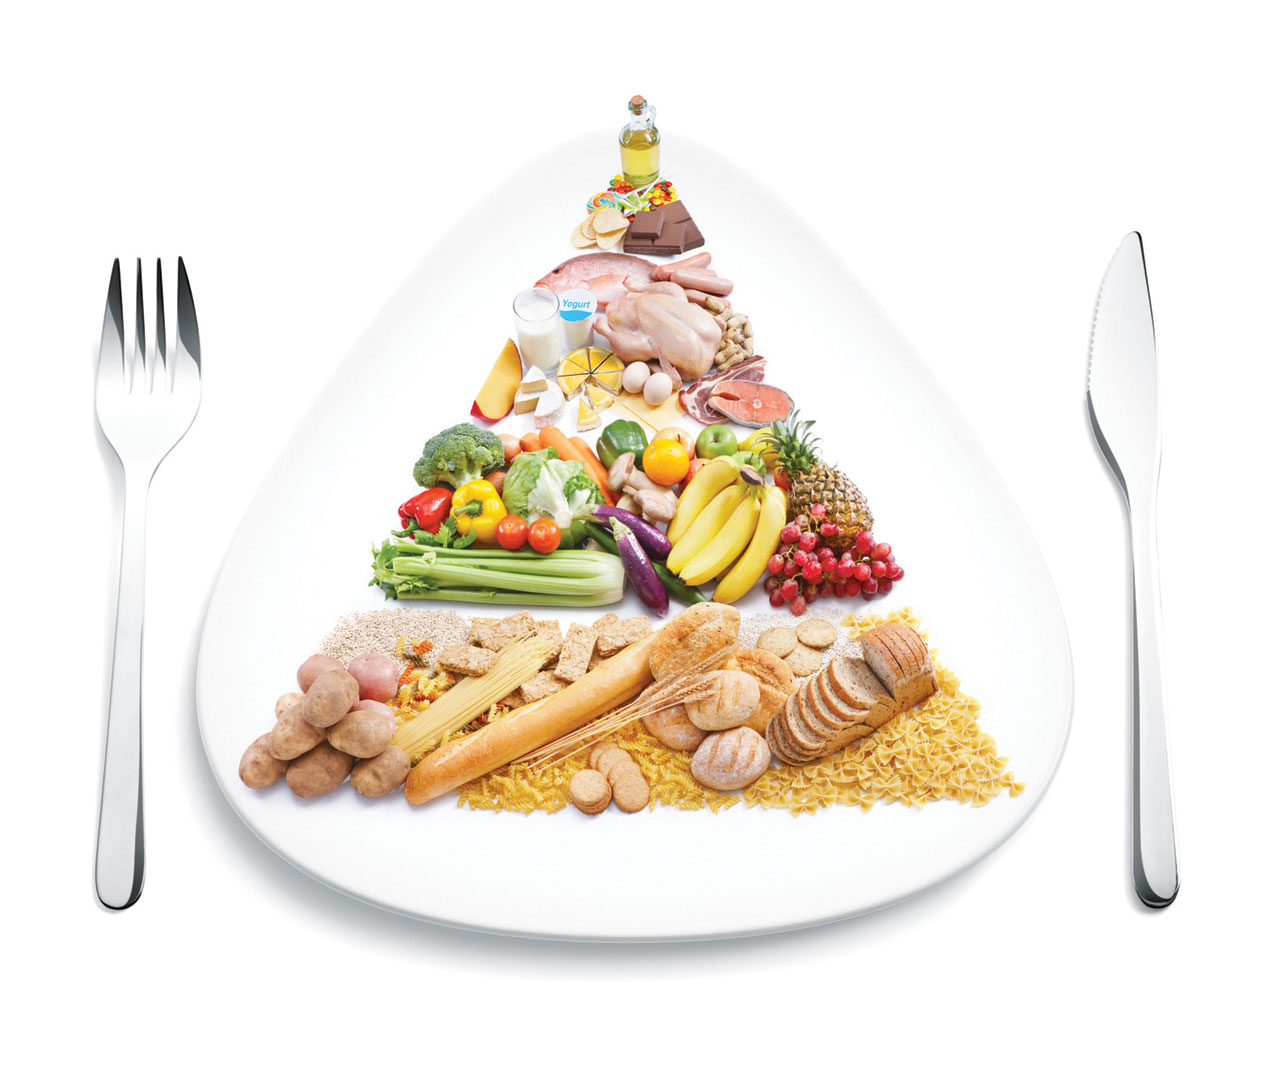 نظام غذائي صحي لتخفيف الوزن في 7 أيام واحد فقط ستلاحظ الفرق جدا